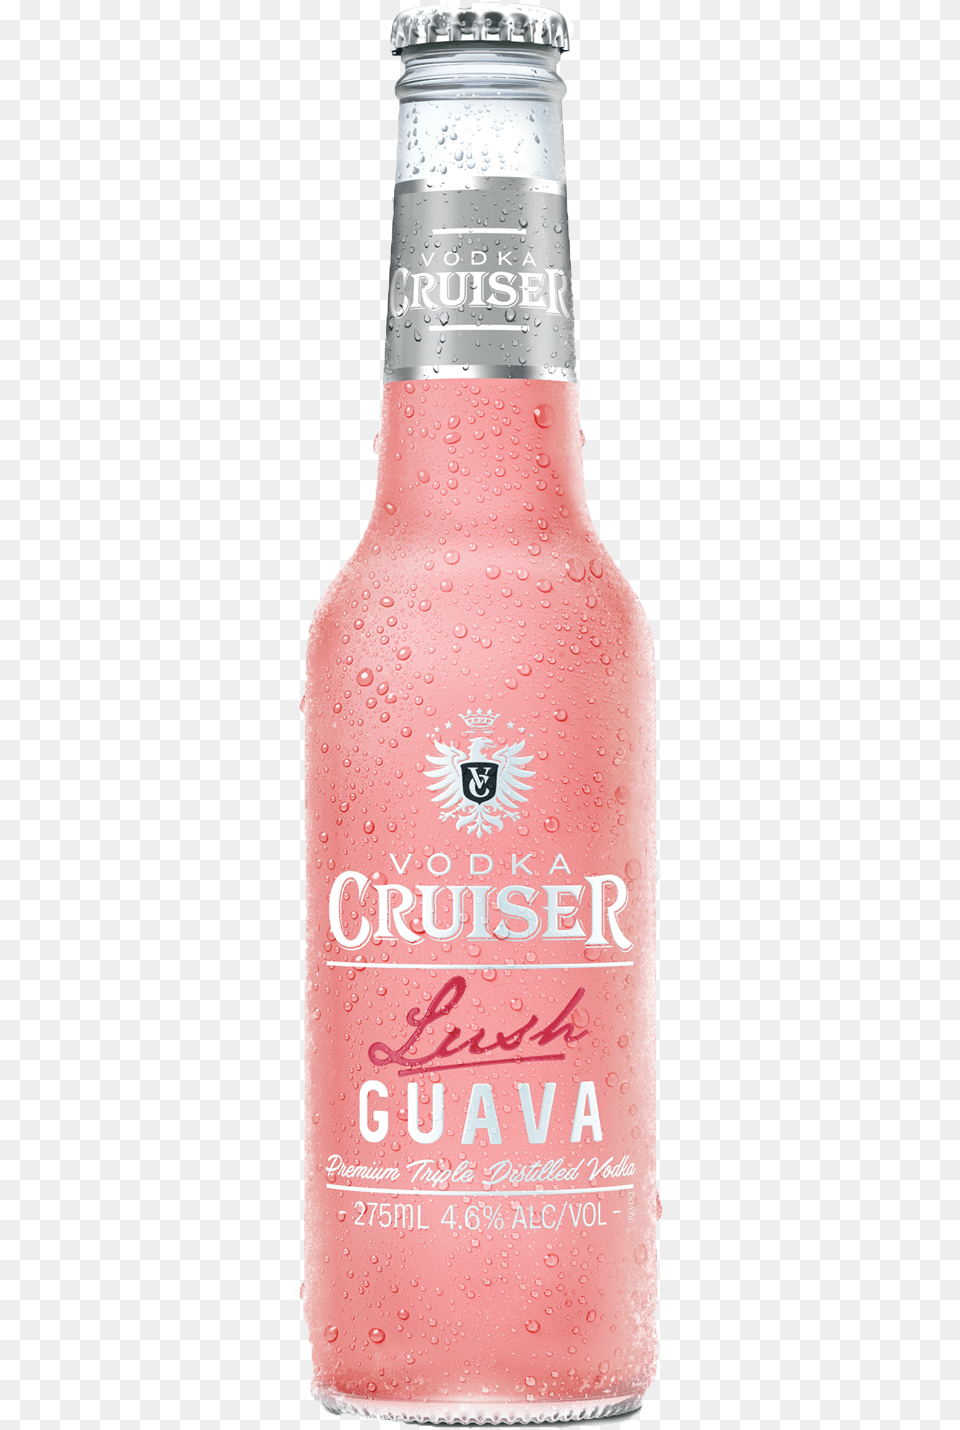 1 Guava Vodka Cruiser, Alcohol, Beer, Beverage, Bottle Free Png